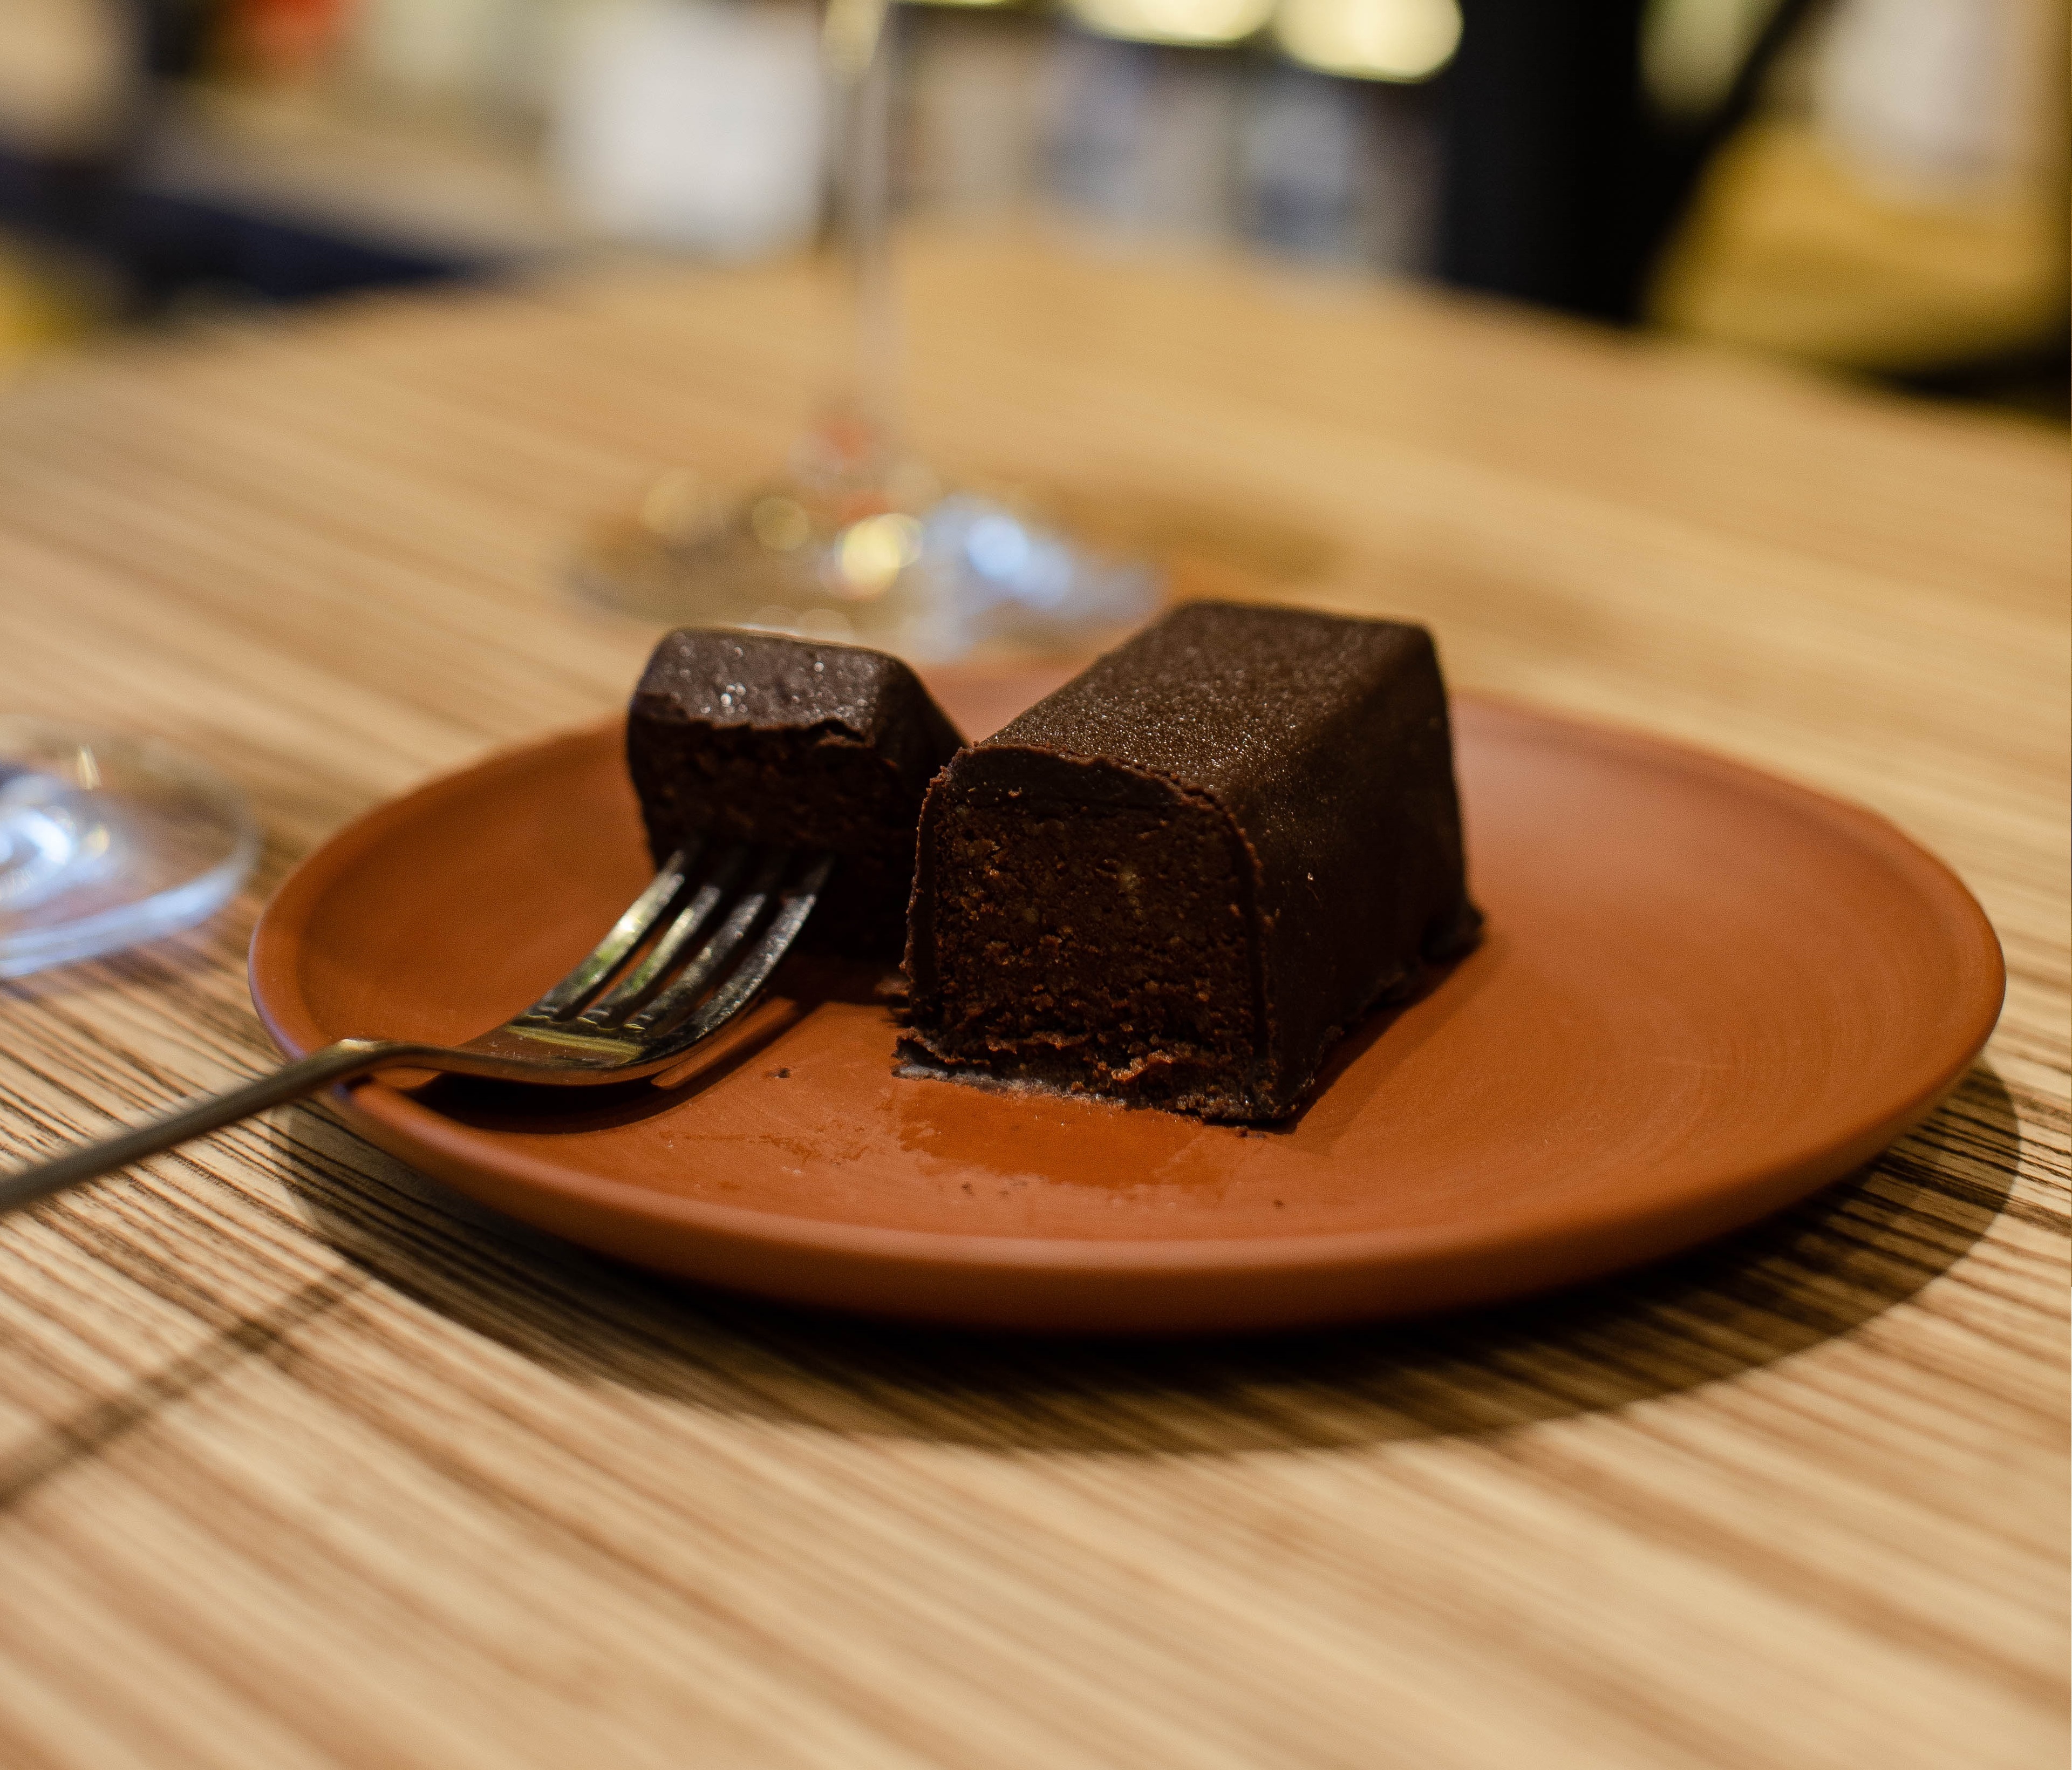 Vegano, libre de gluten y sin cocción: cómo hacer un brownie saludable -  Infobae